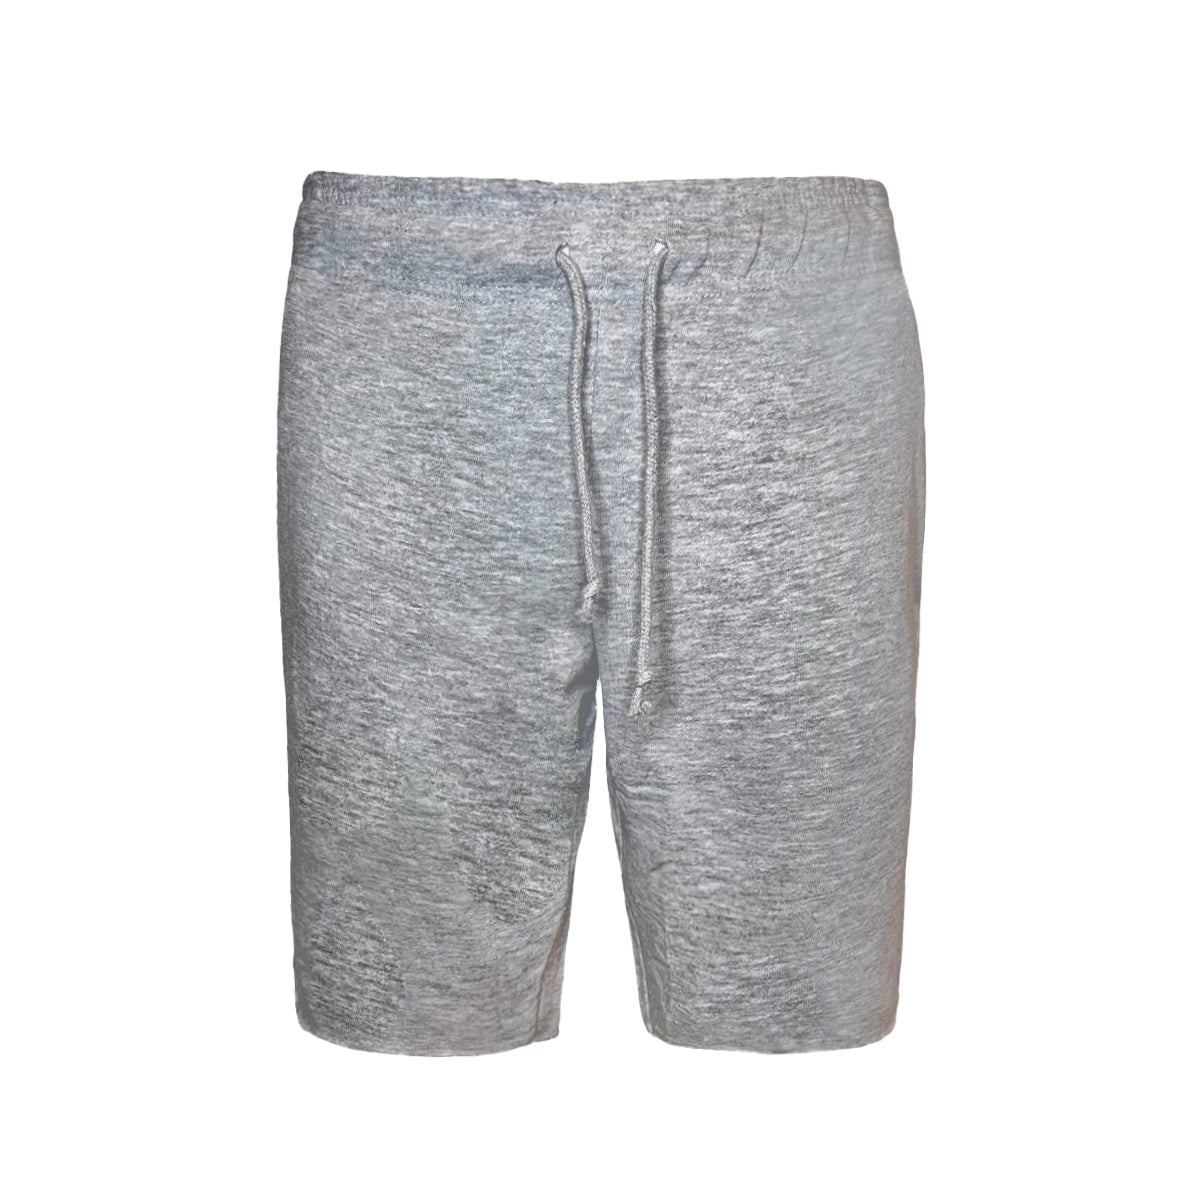 6030 - Adult Smart Shorts-Sports Grey Color - AF APPARELS(USA)